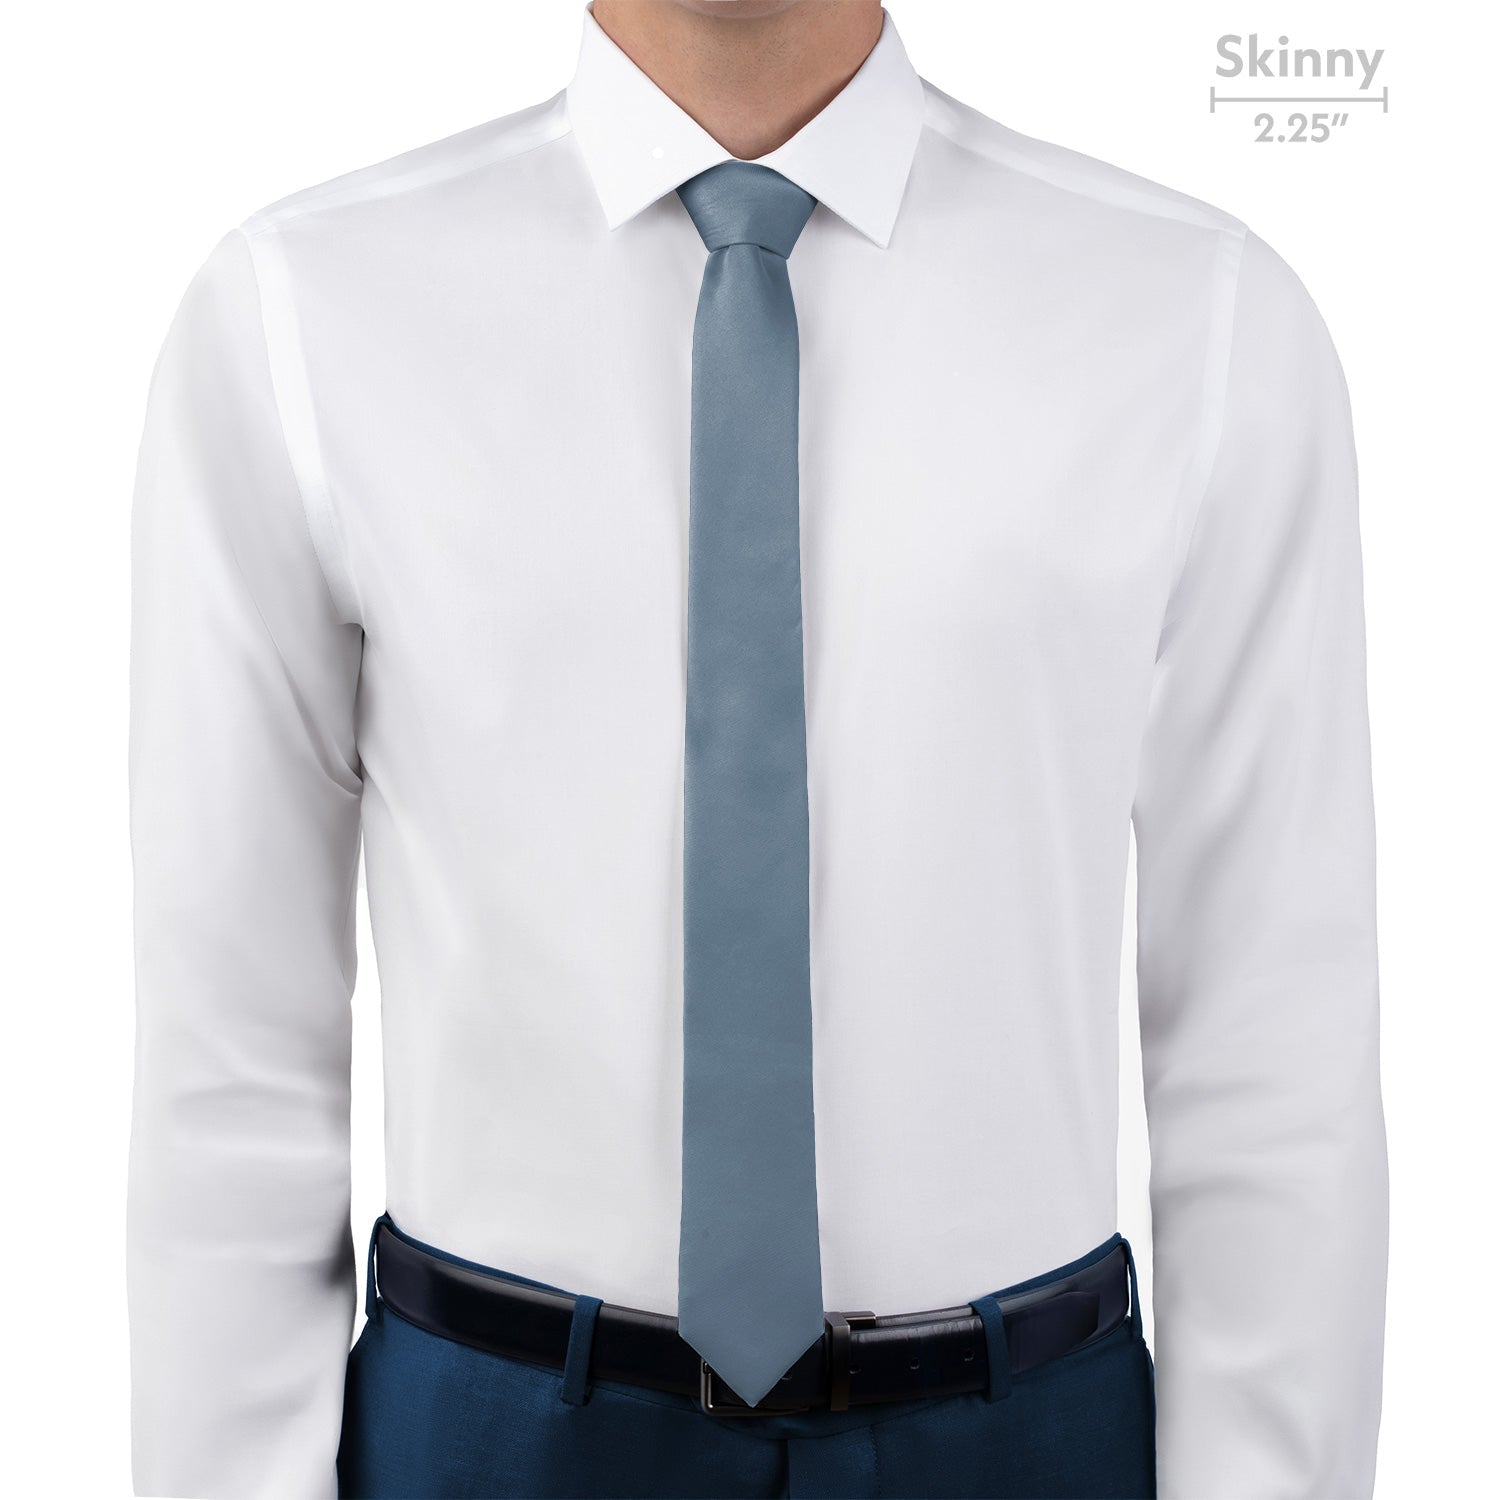 Azazie Dusty Blue Necktie - Skinny - Knotty Tie Co.